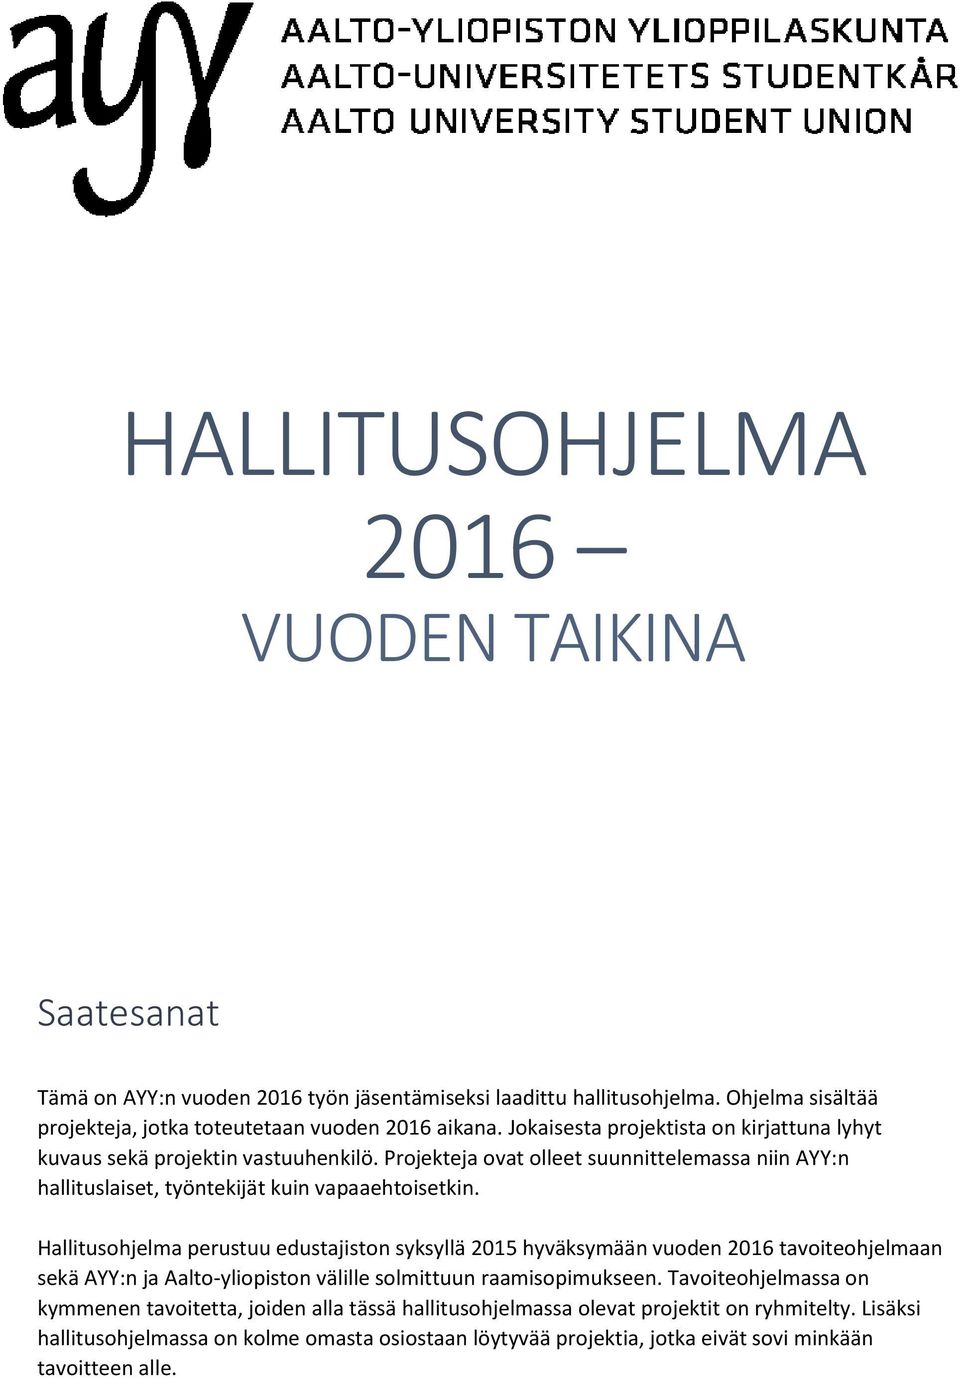 Hallitusohjelma perustuu edustajiston syksyllä 2015 hyväksymään vuoden 2016 tavoiteohjelmaan sekä AYY:n ja Aalto-yliopiston välille solmittuun raamisopimukseen.